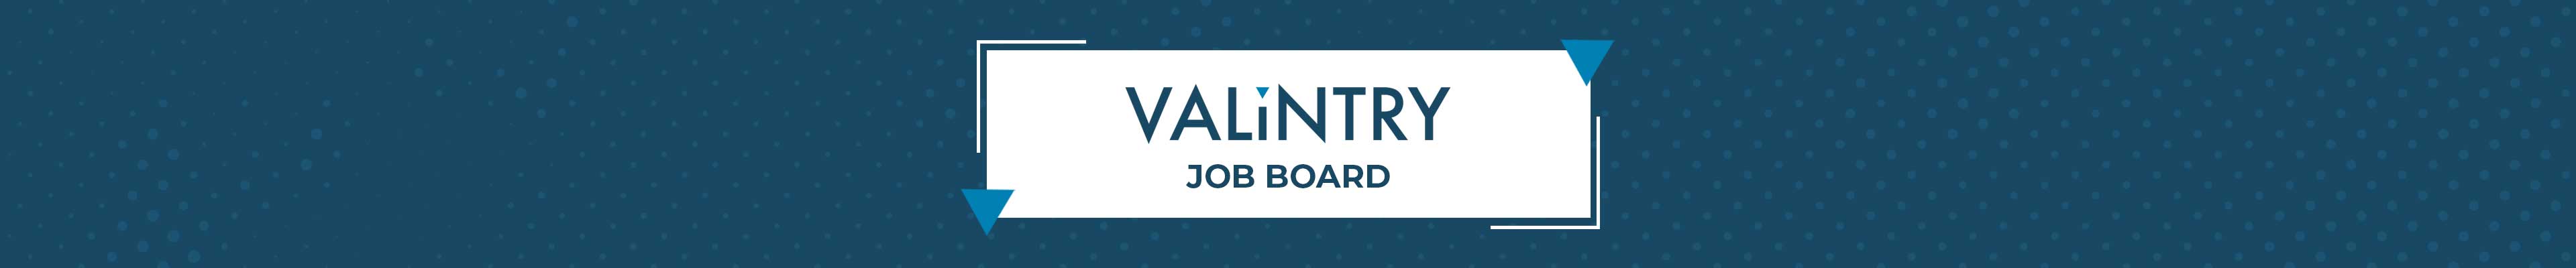 VALiNTRY Job Board Header Image